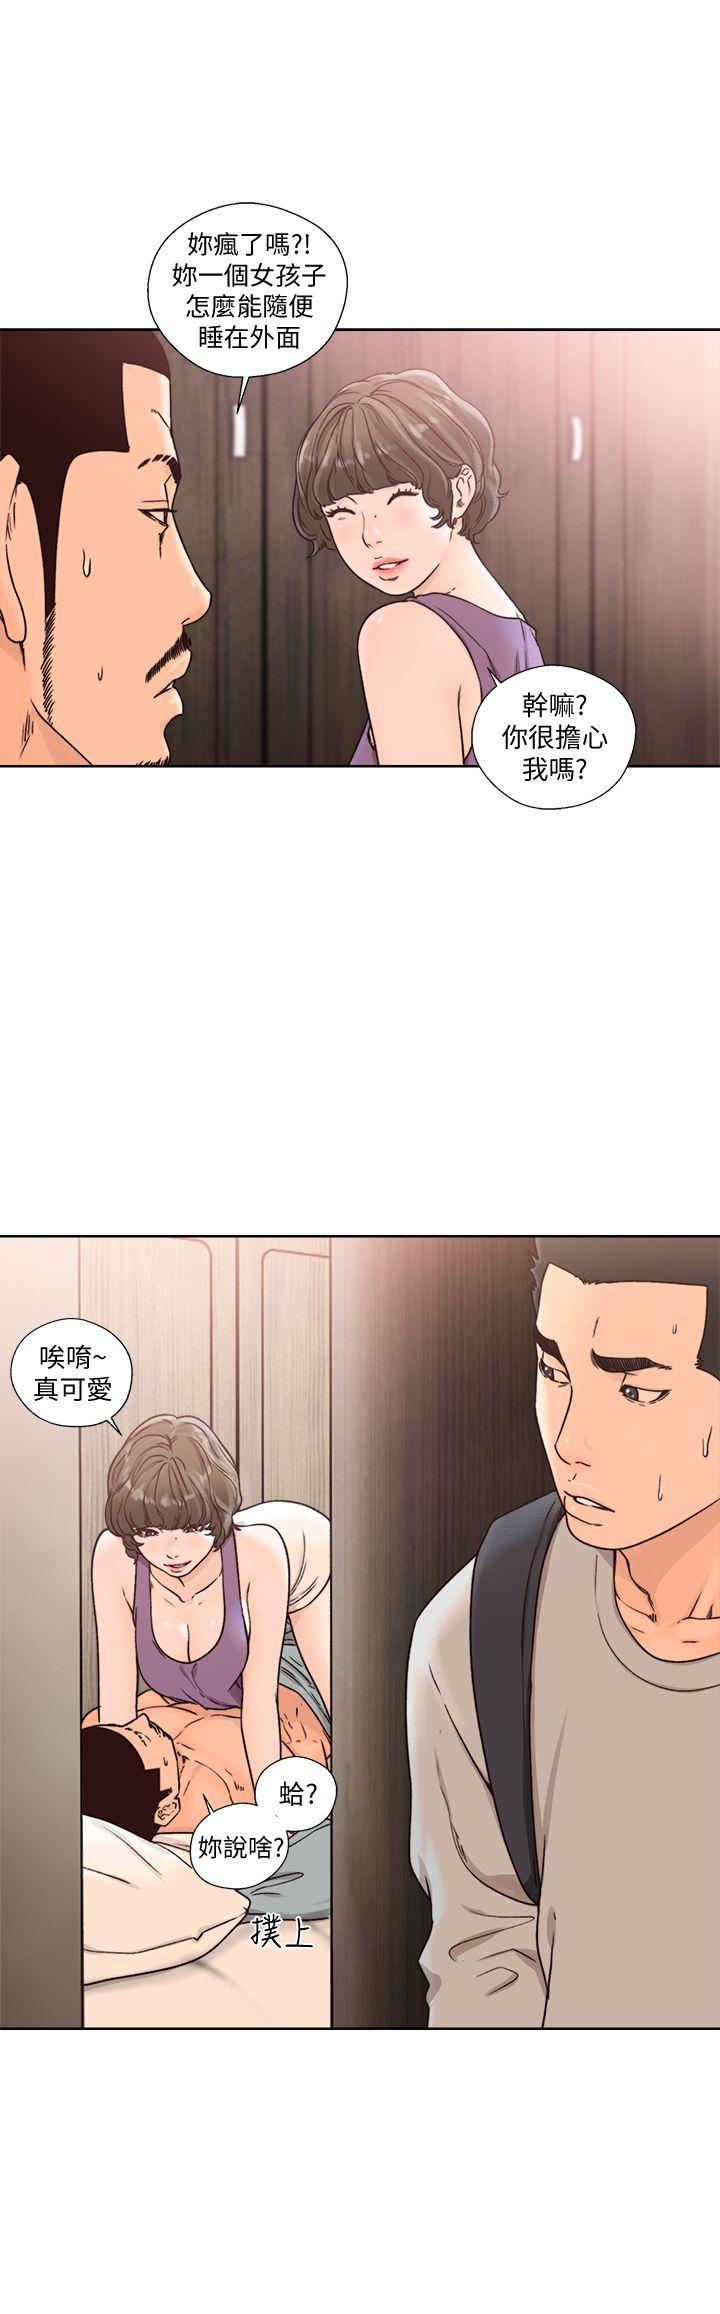 韩国污漫画 解禁:初始的快感 第97话-带野男人回家 2